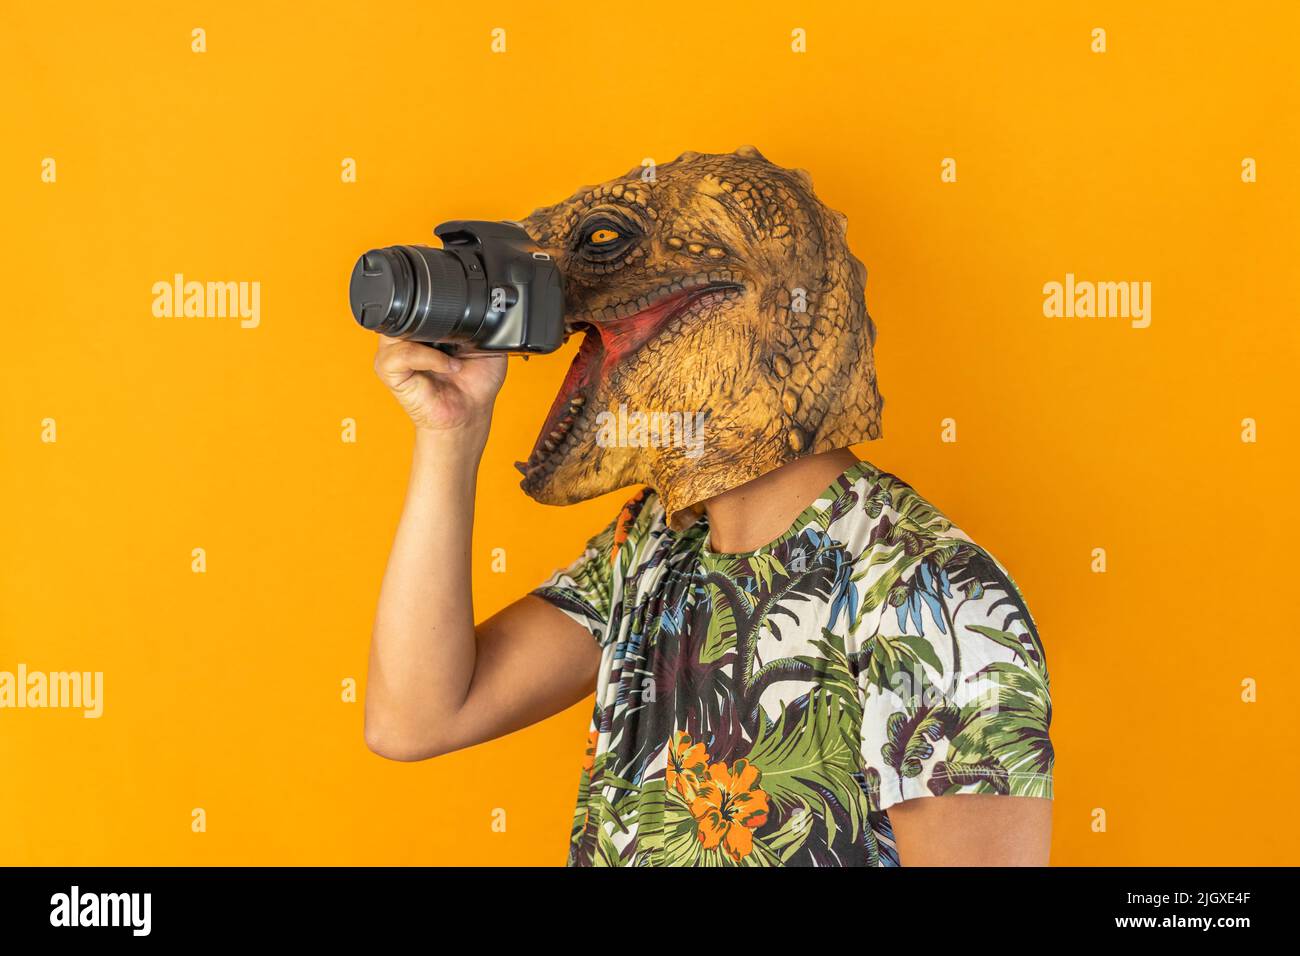 Mann, der mit einer professionellen Kamera fotografiert, trägt eine Tierkopfmaske, die auf gelbem Hintergrund isoliert ist Stockfoto